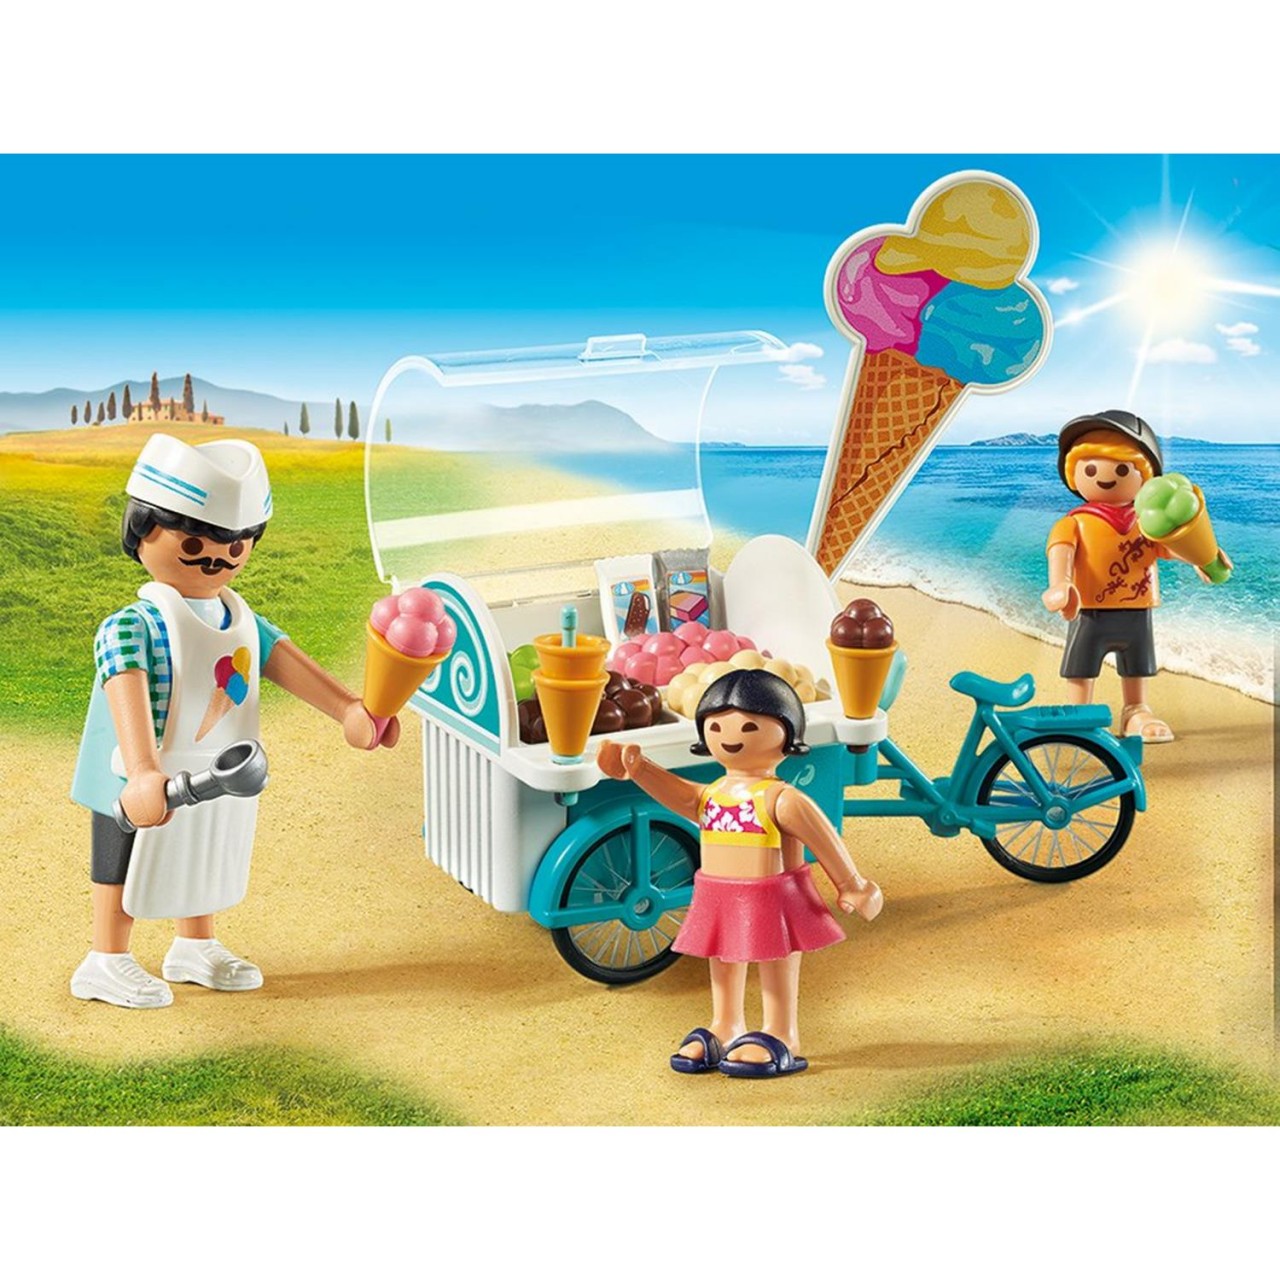 Playmobil 9426 Fahrrad mit Eiswagen